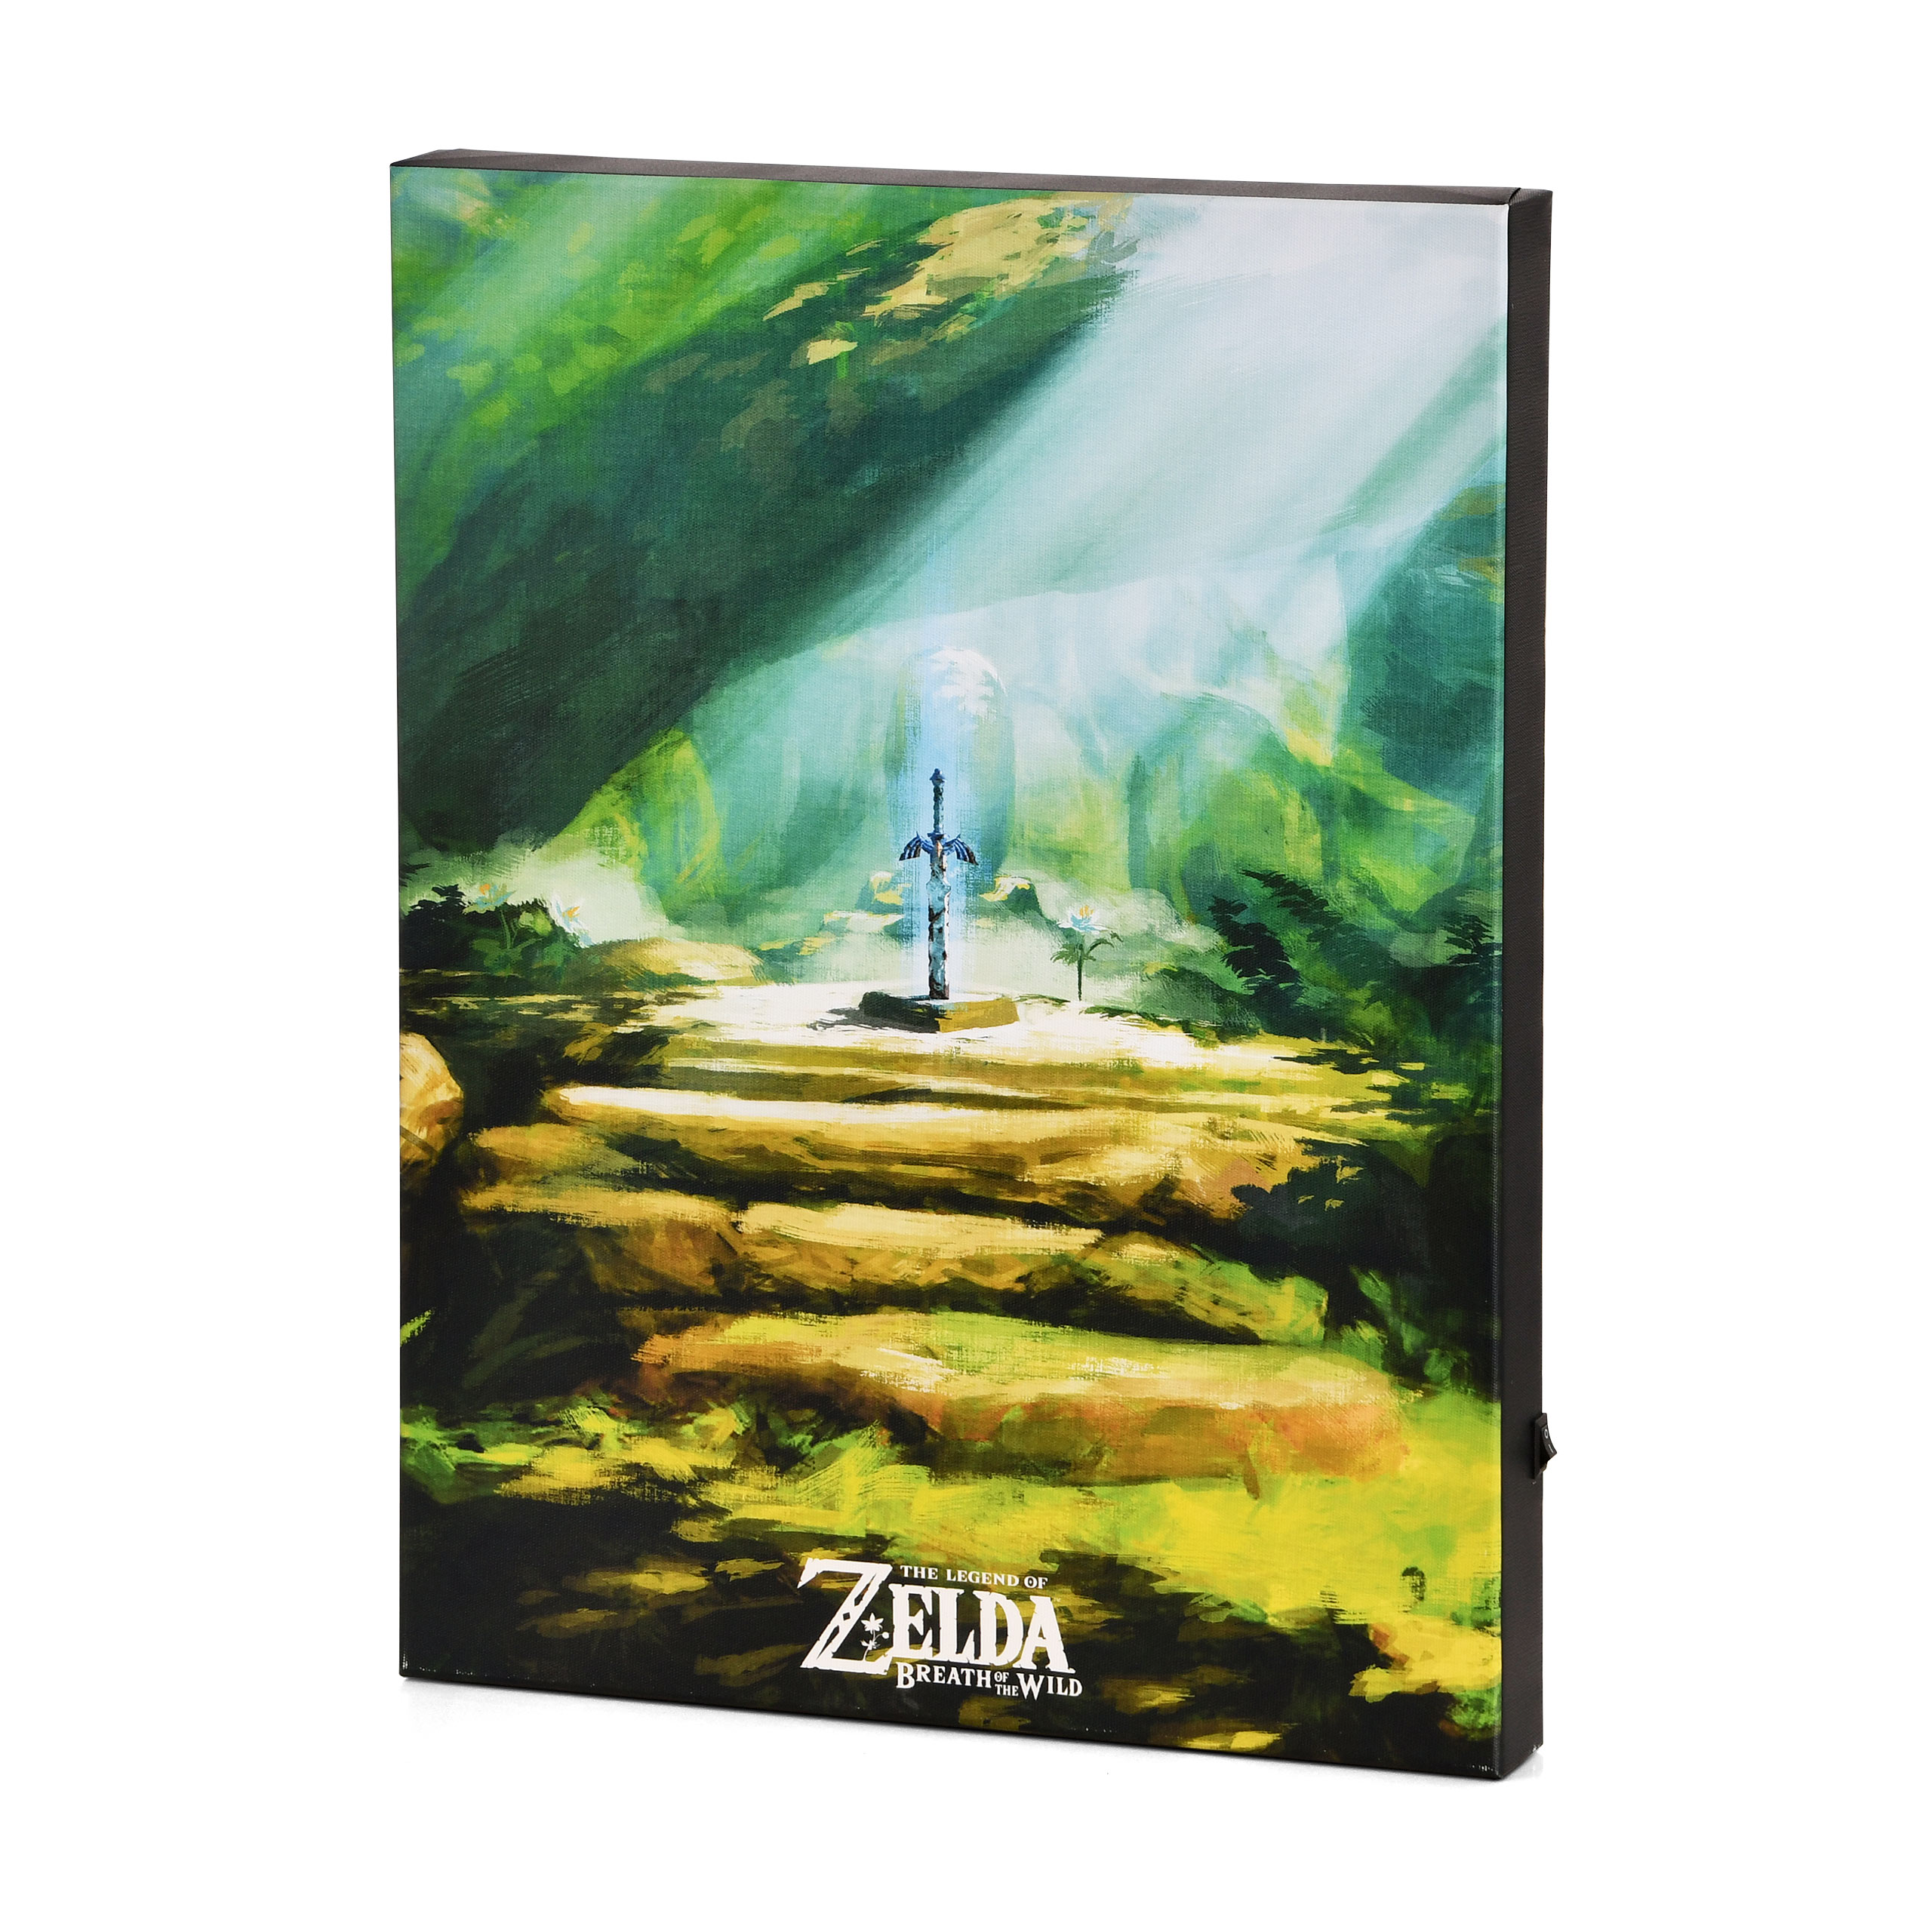 Zelda - Masterschwert Wandbild mit Licht